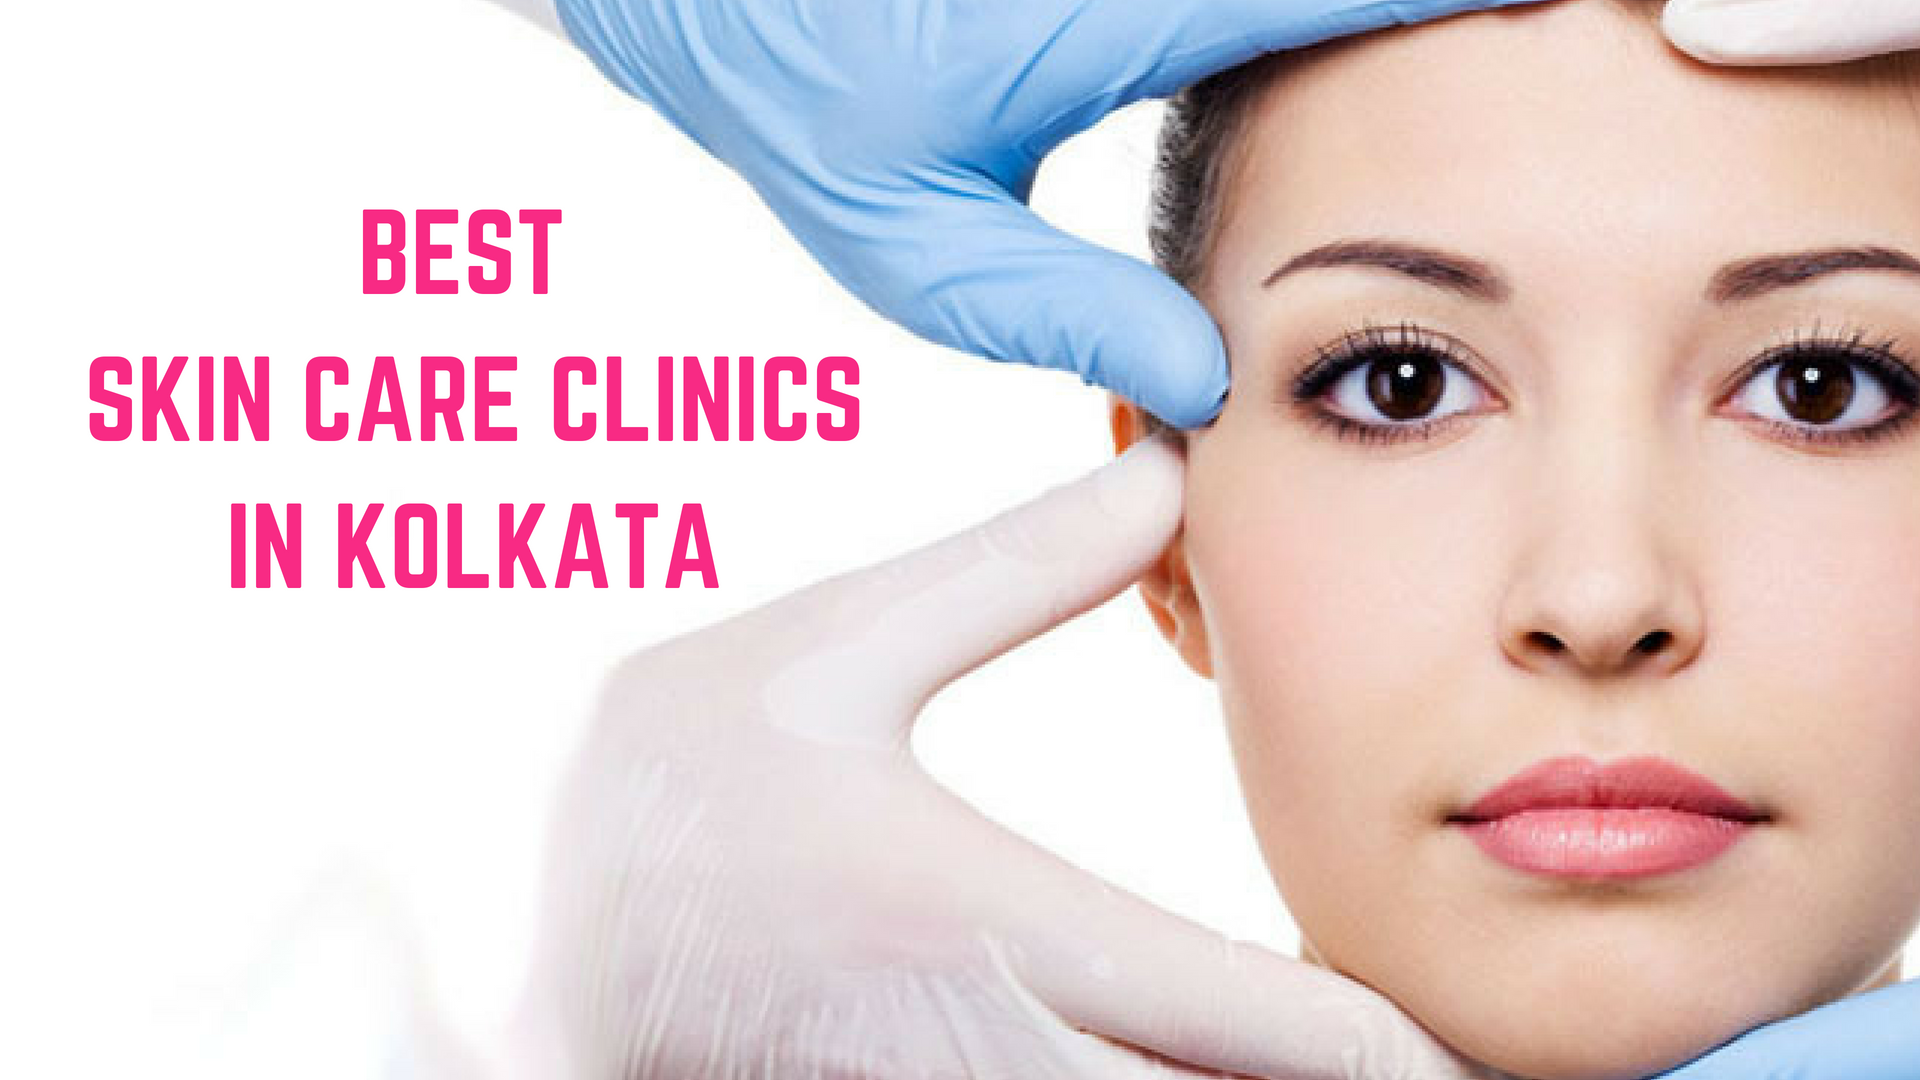 Top 10 Best Skin Care Clinics in Kolkata - Essencz